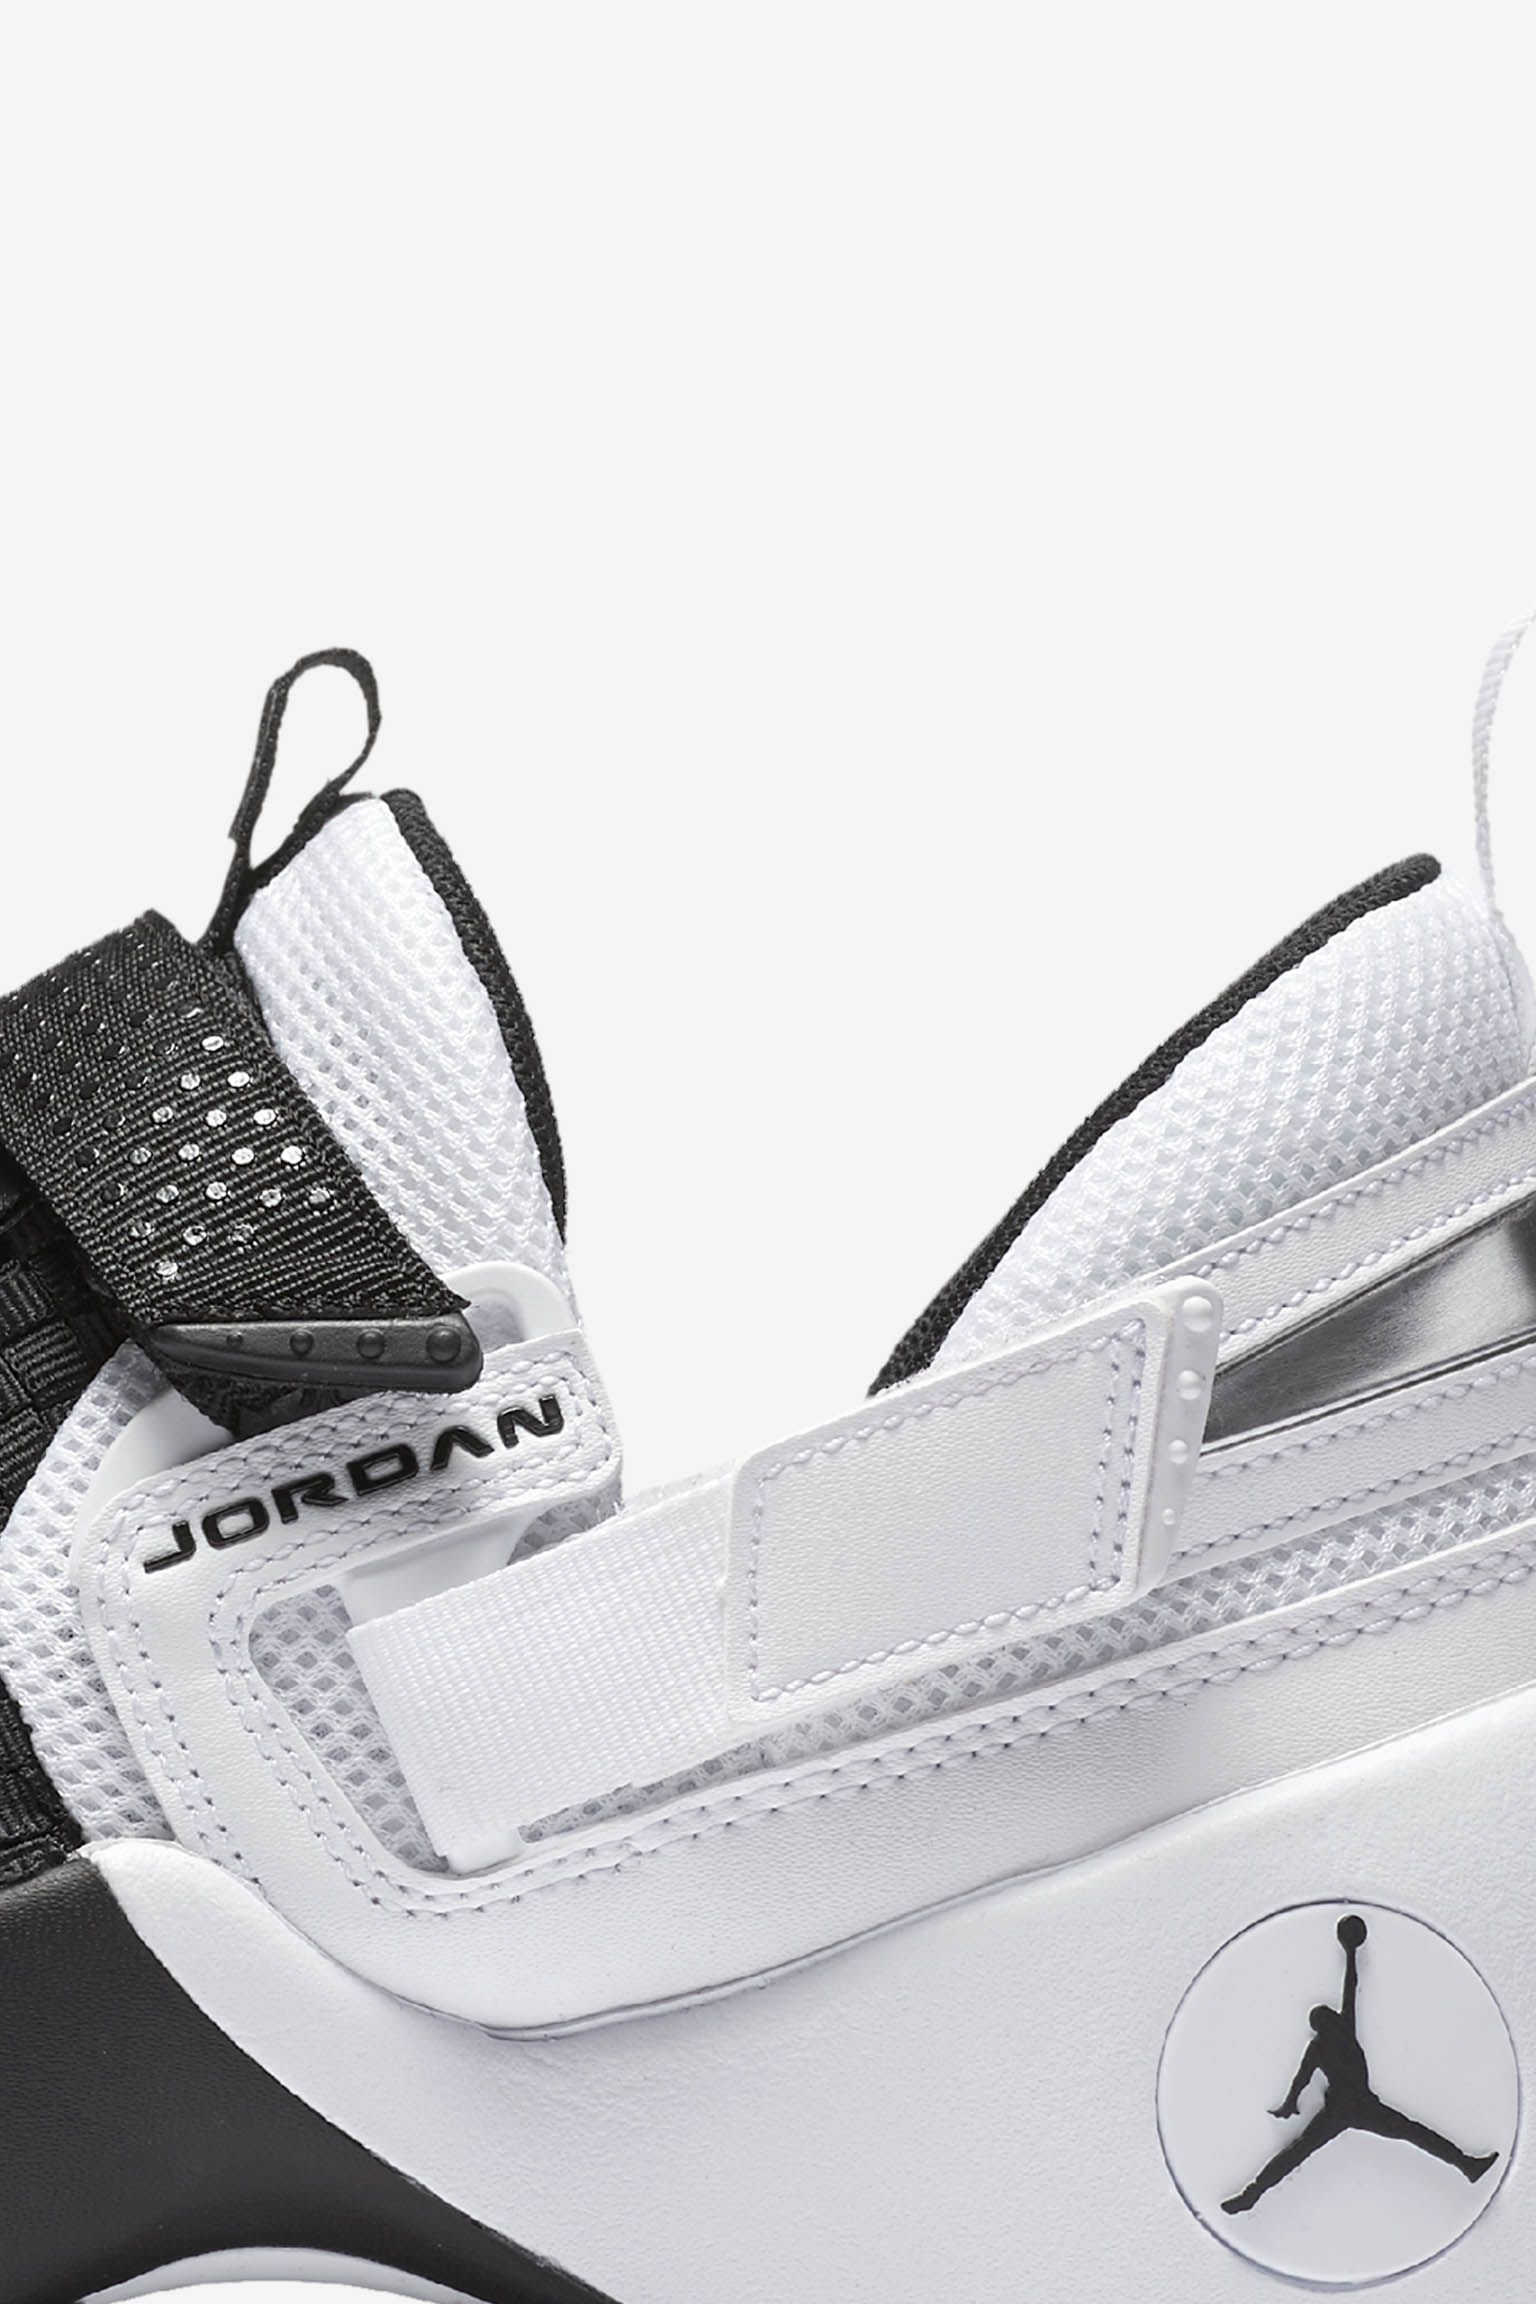 ジョーダン トランナー LX 'Black u0026amp; White'. Nike SNKRS JP